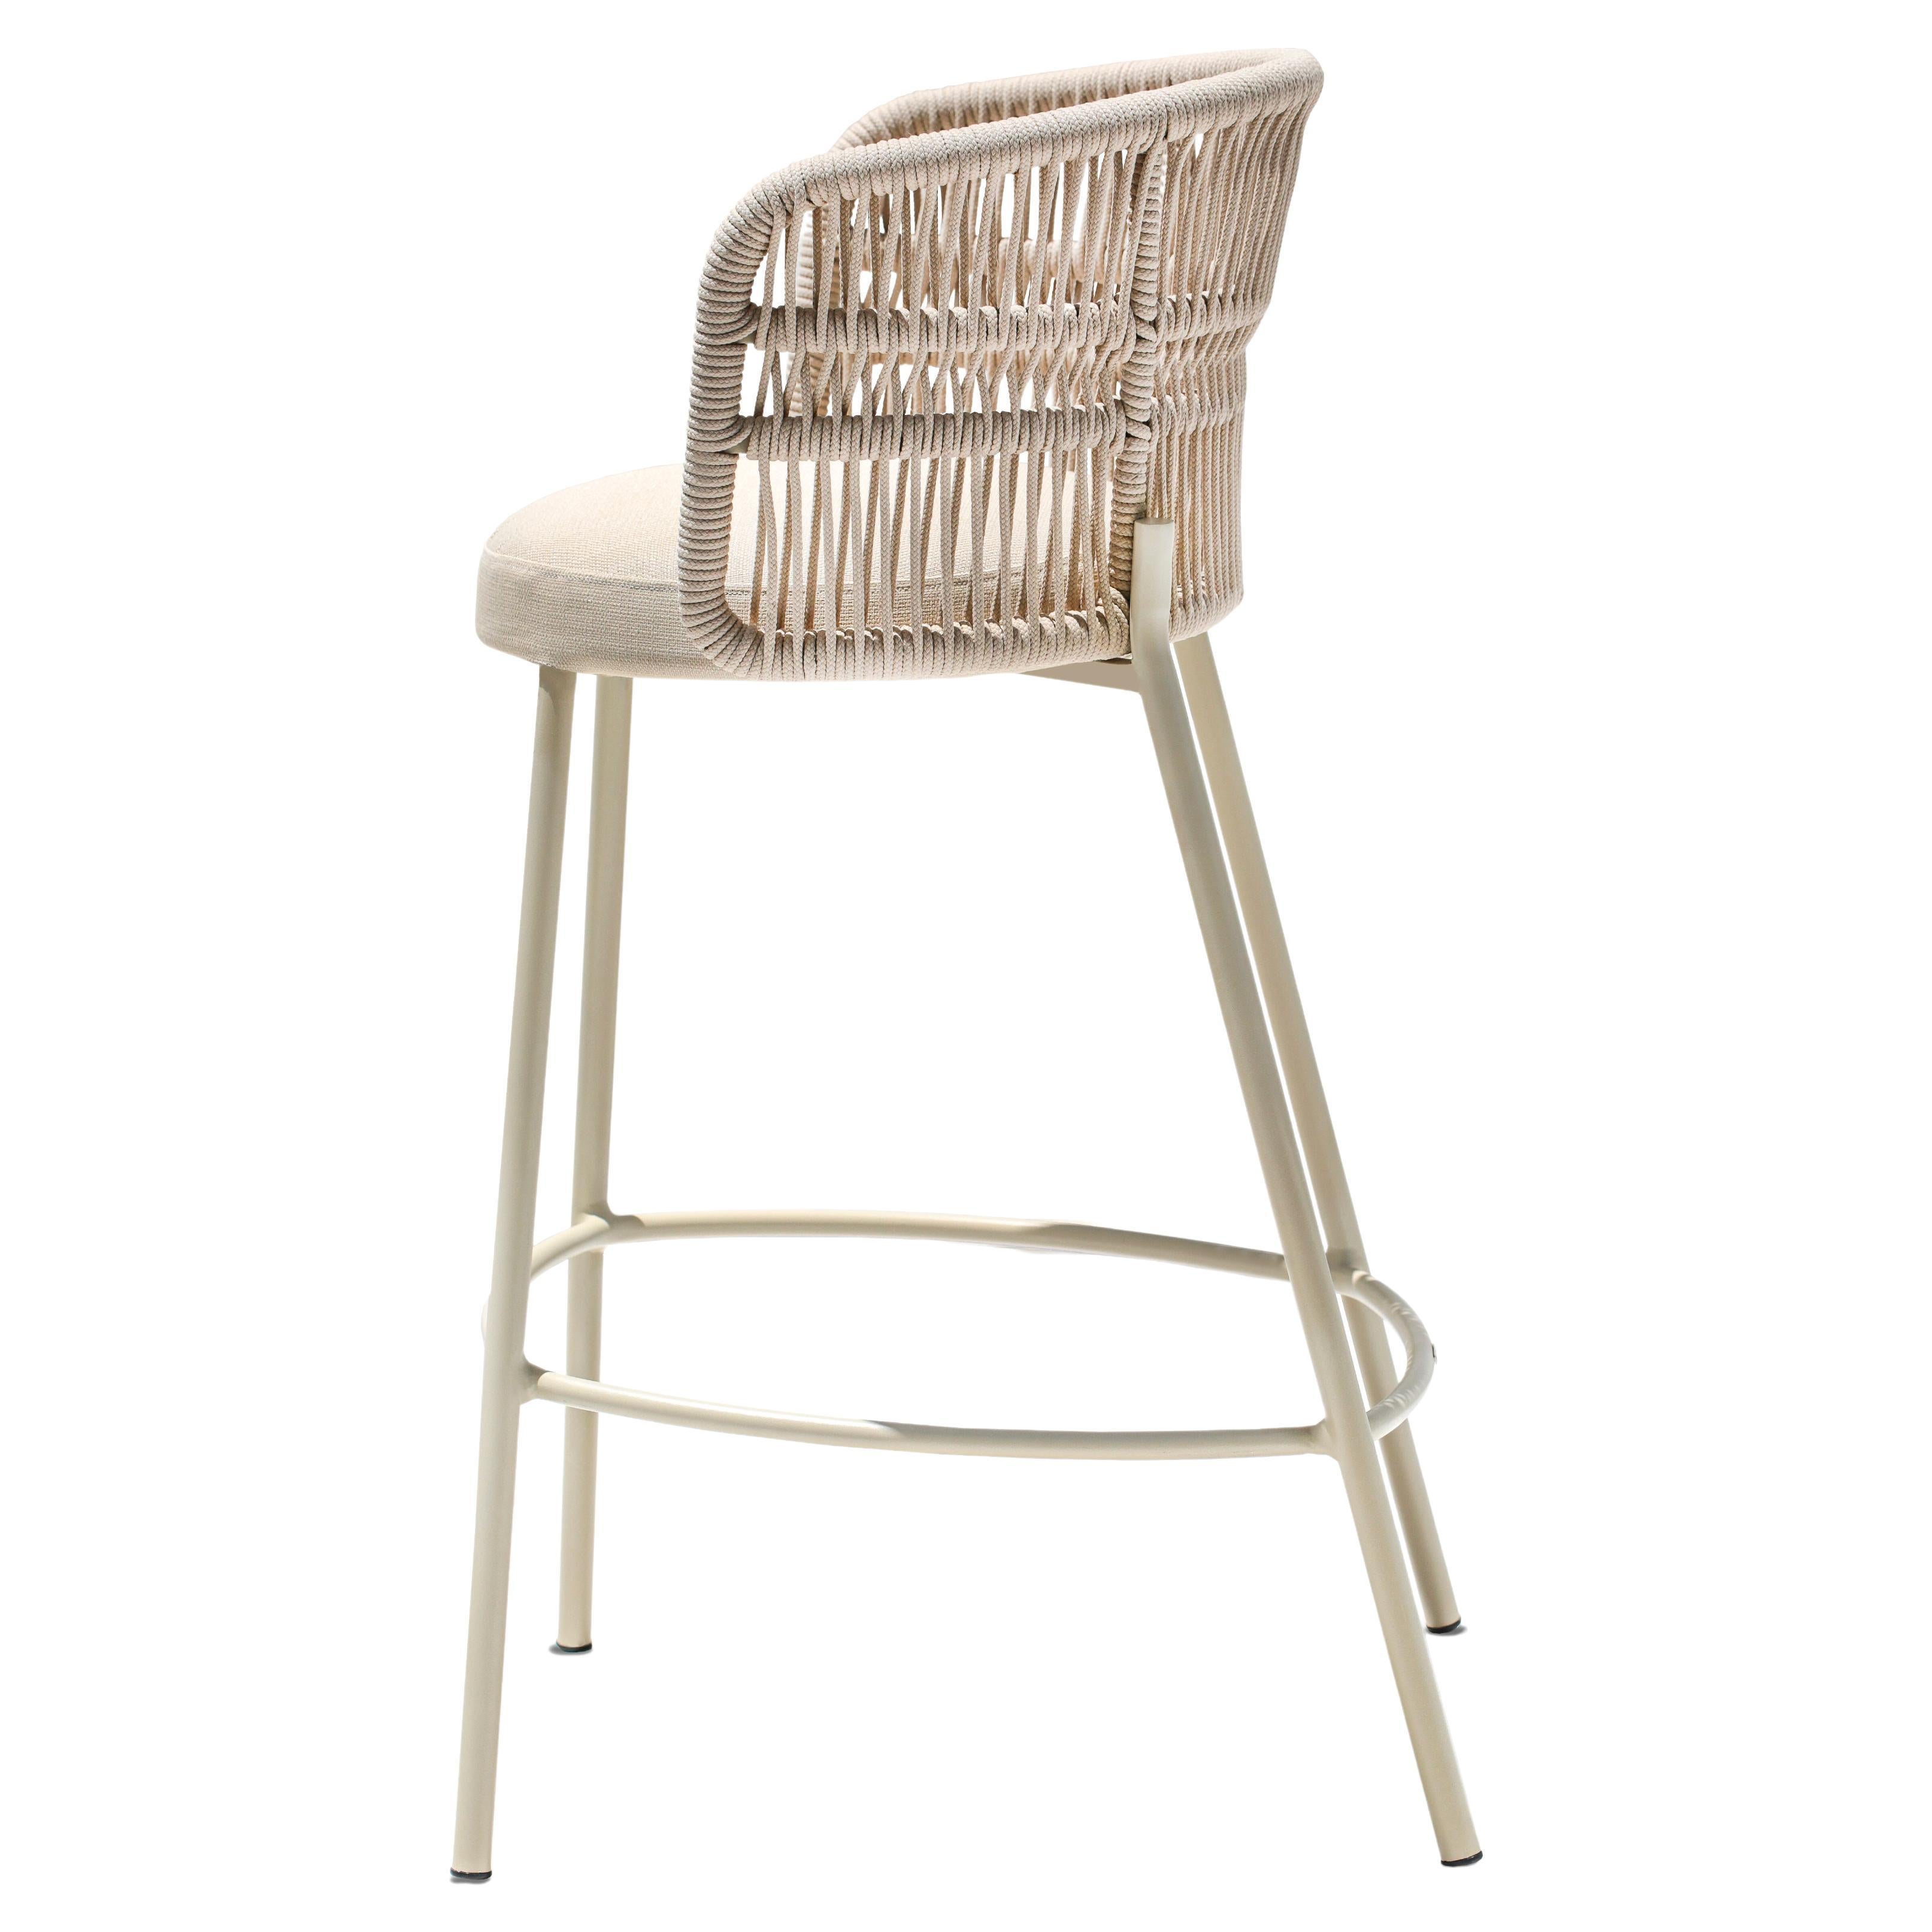 Mit seinen organischen und fließenden Formen ist das Design des Amalfi-Stuhls von der Natur der italienischen Amalfiküste inspiriert.
Das fließende Design bietet ein klares, zeitloses Design, das sich leicht mit anderen Umgebungen kombinieren